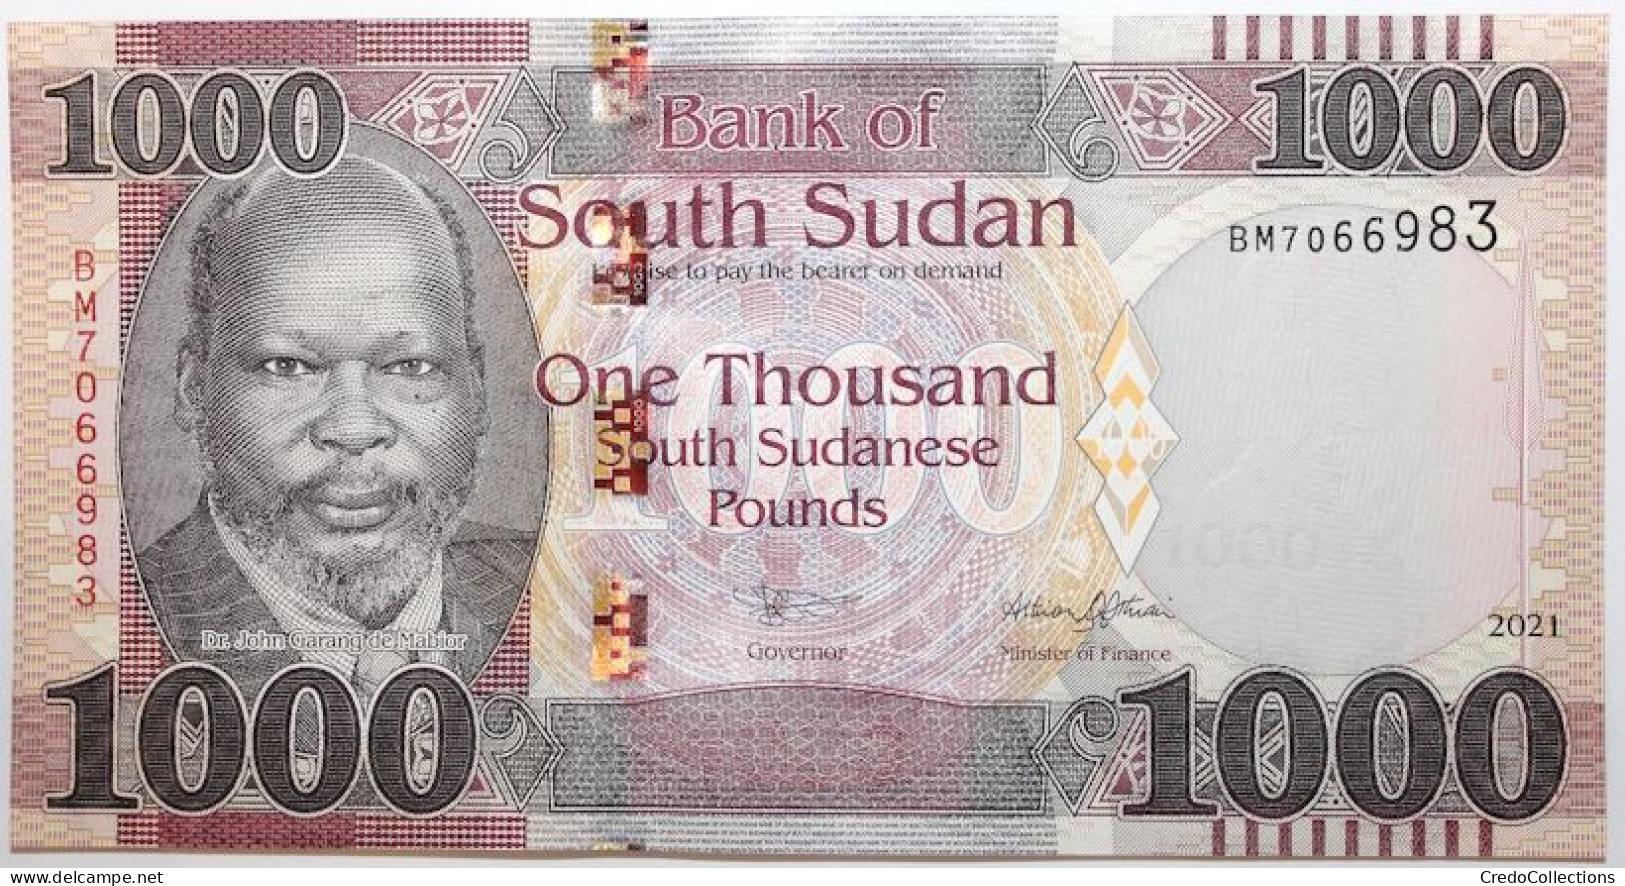 Soudan Du Sud - 1000 Pounds - 2021 - PICK 17b - NEUF - Südsudan